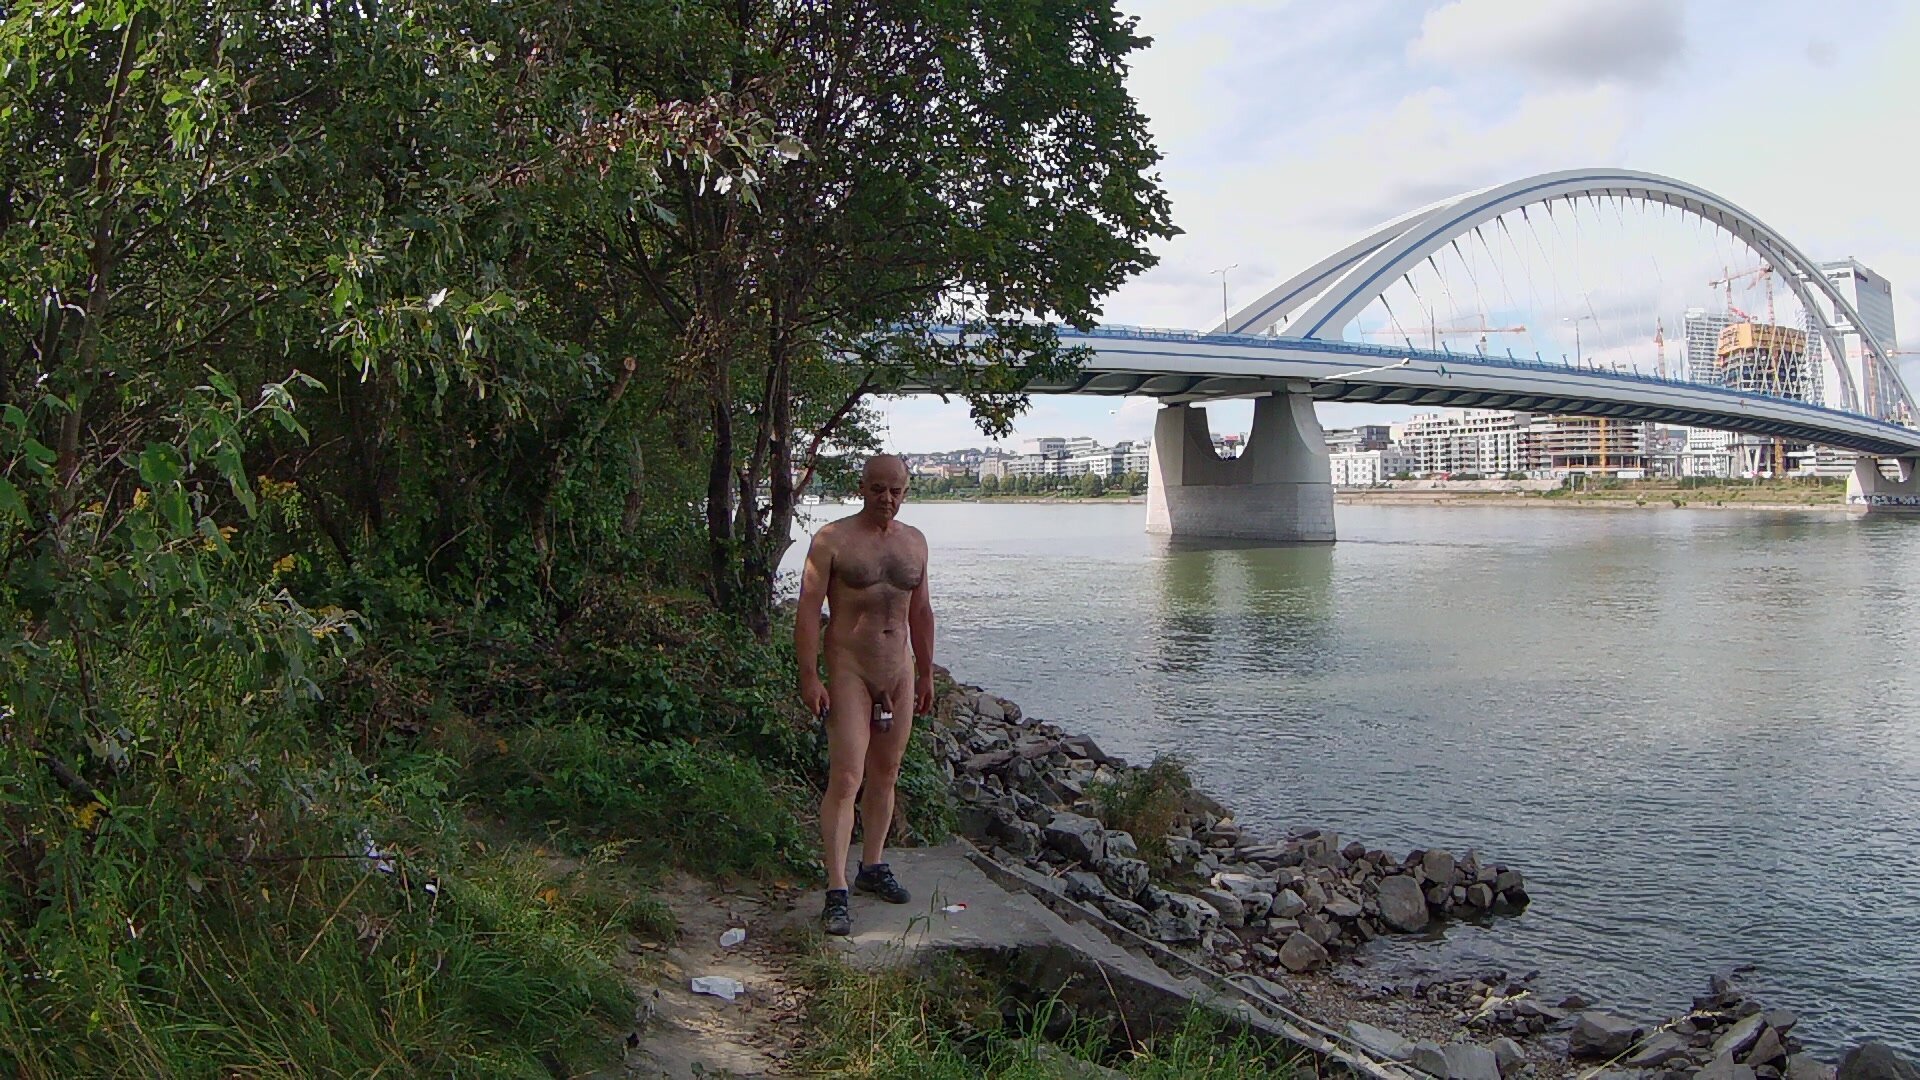 Naked under the bridge